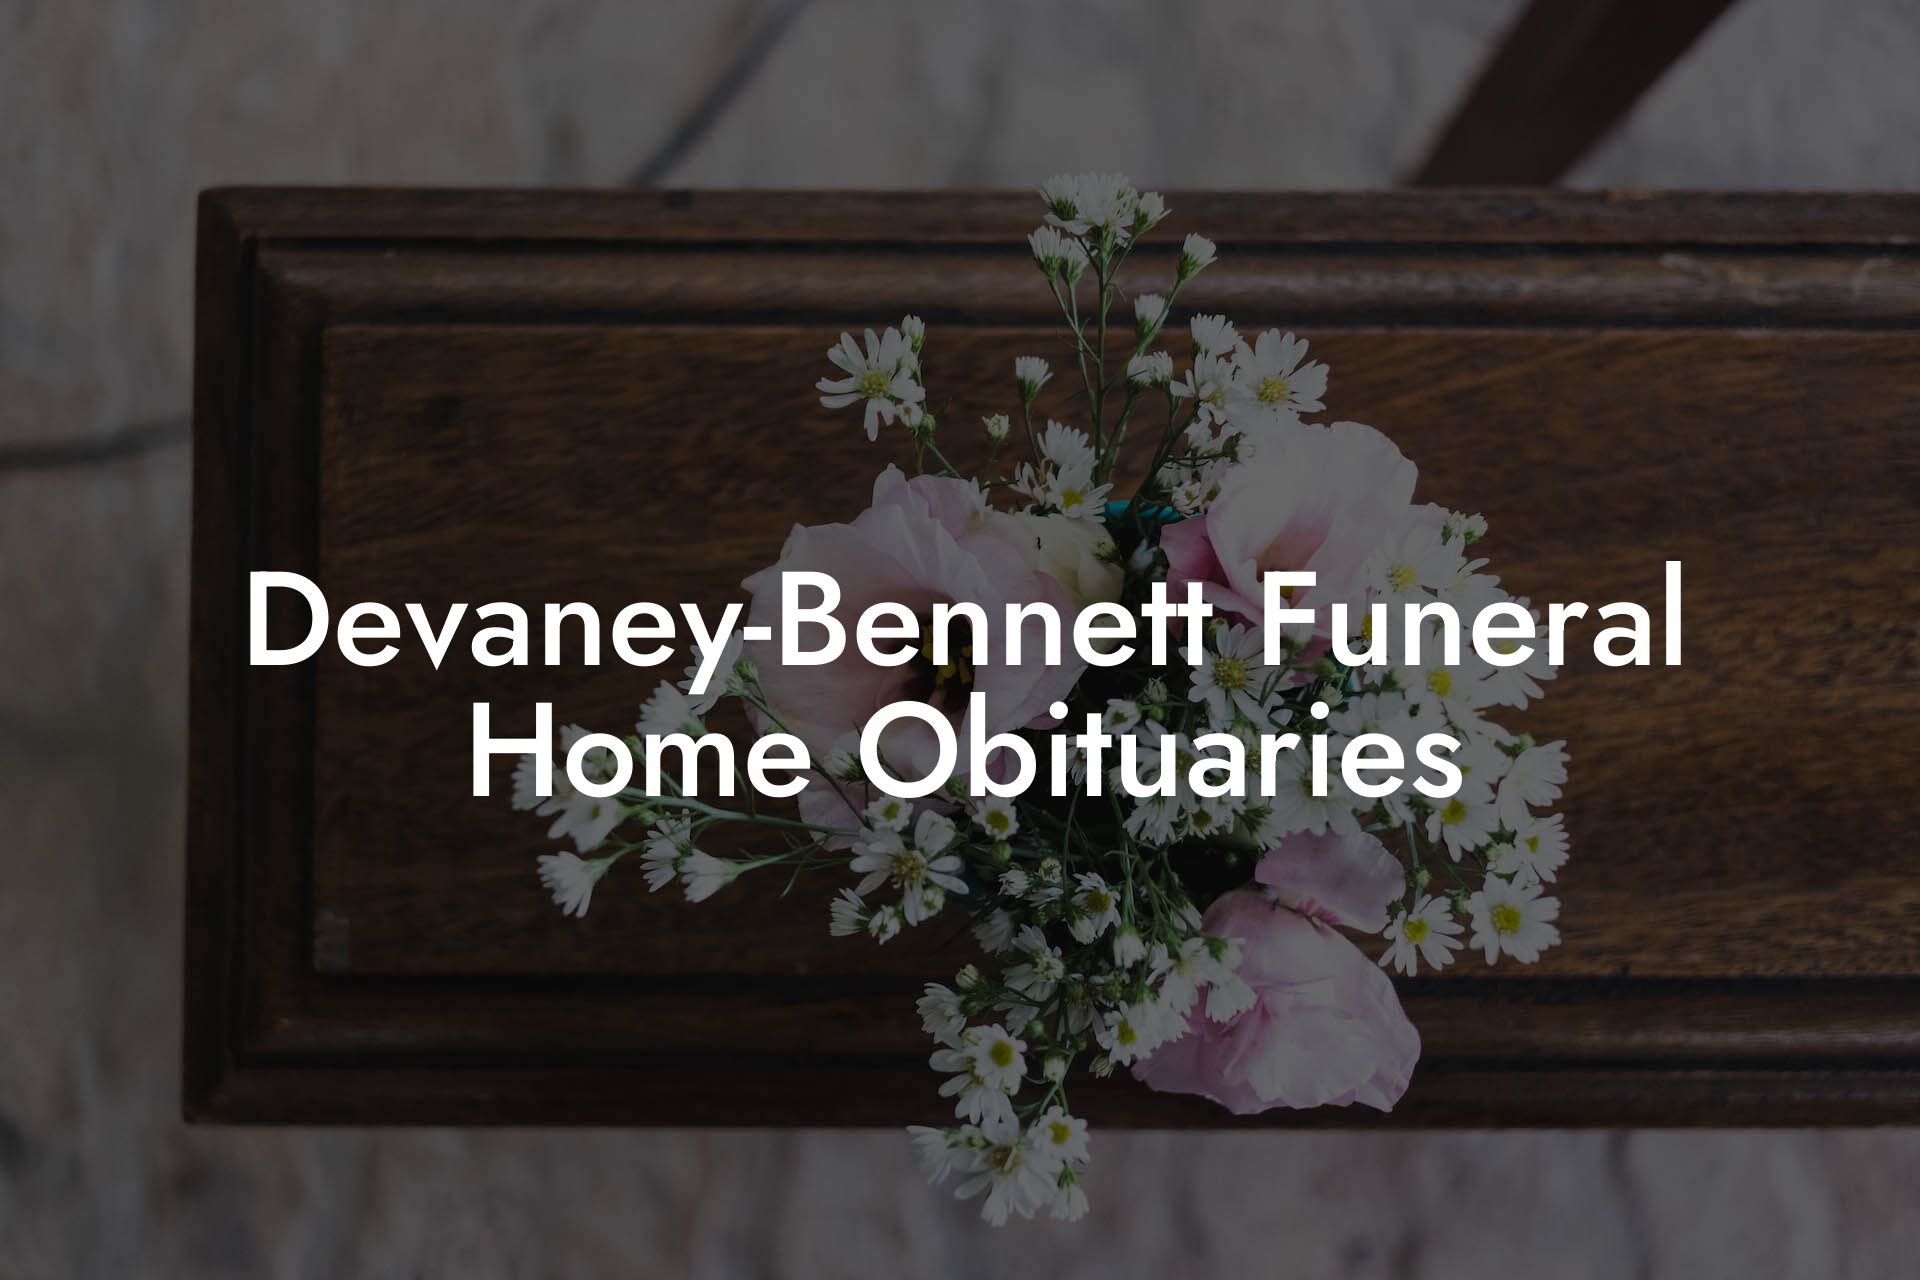 Devaney-Bennett Funeral Home Obituaries